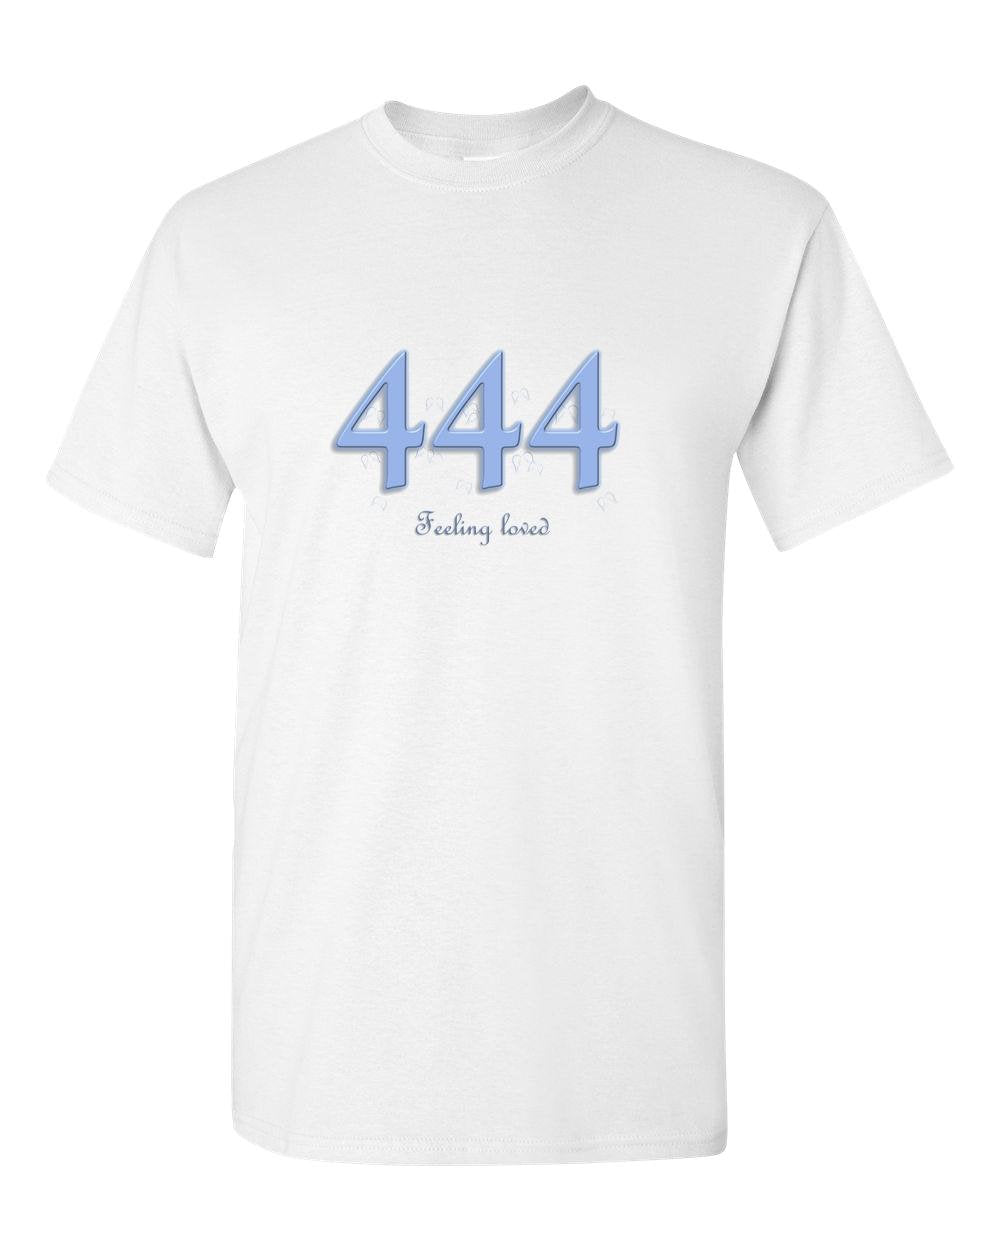 Angel 444 Feeling Loved - Adult Unisex T-Shirt